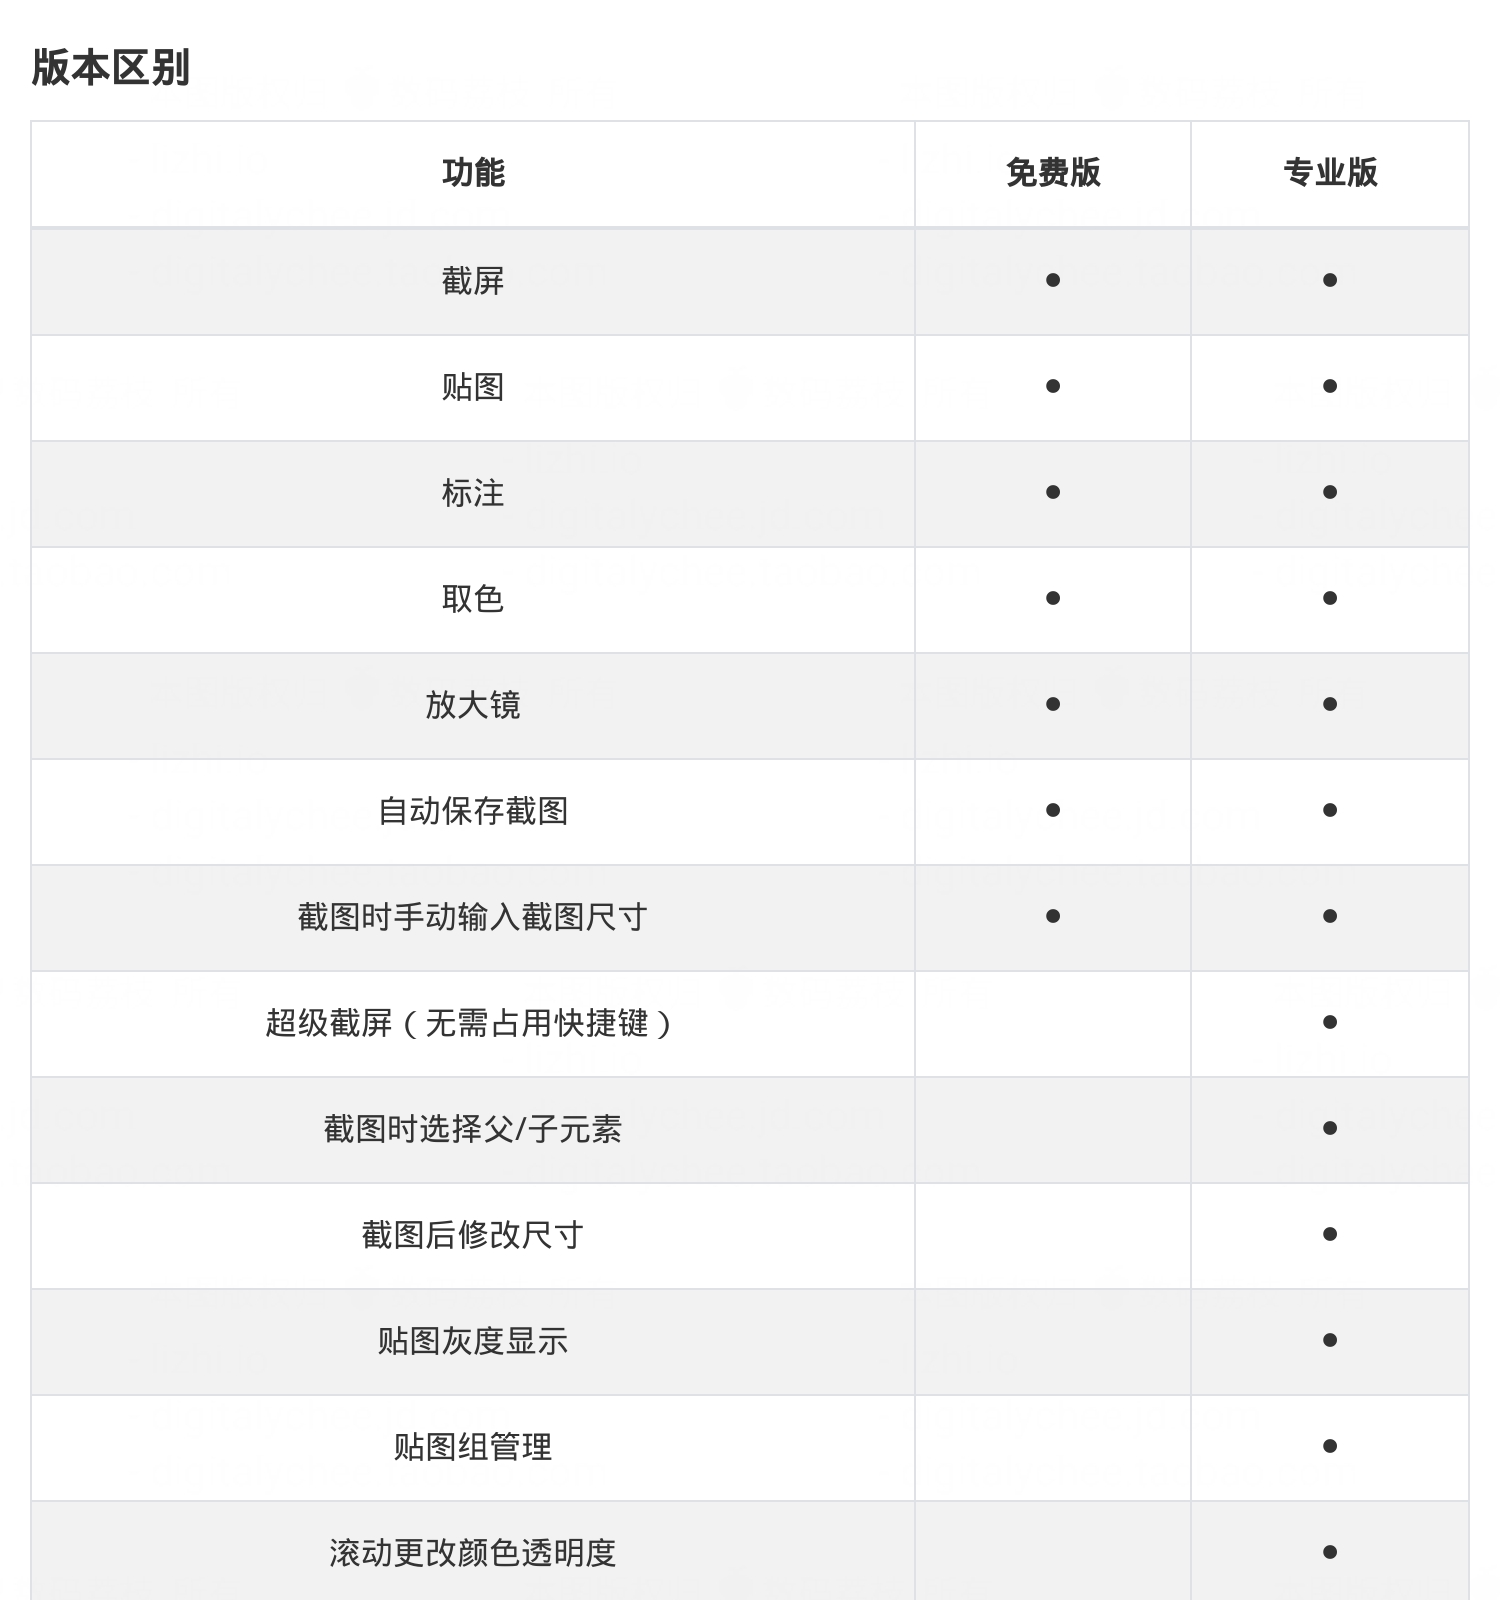 免费小巧的截图工具 Snipaste v2.4 官方中文版